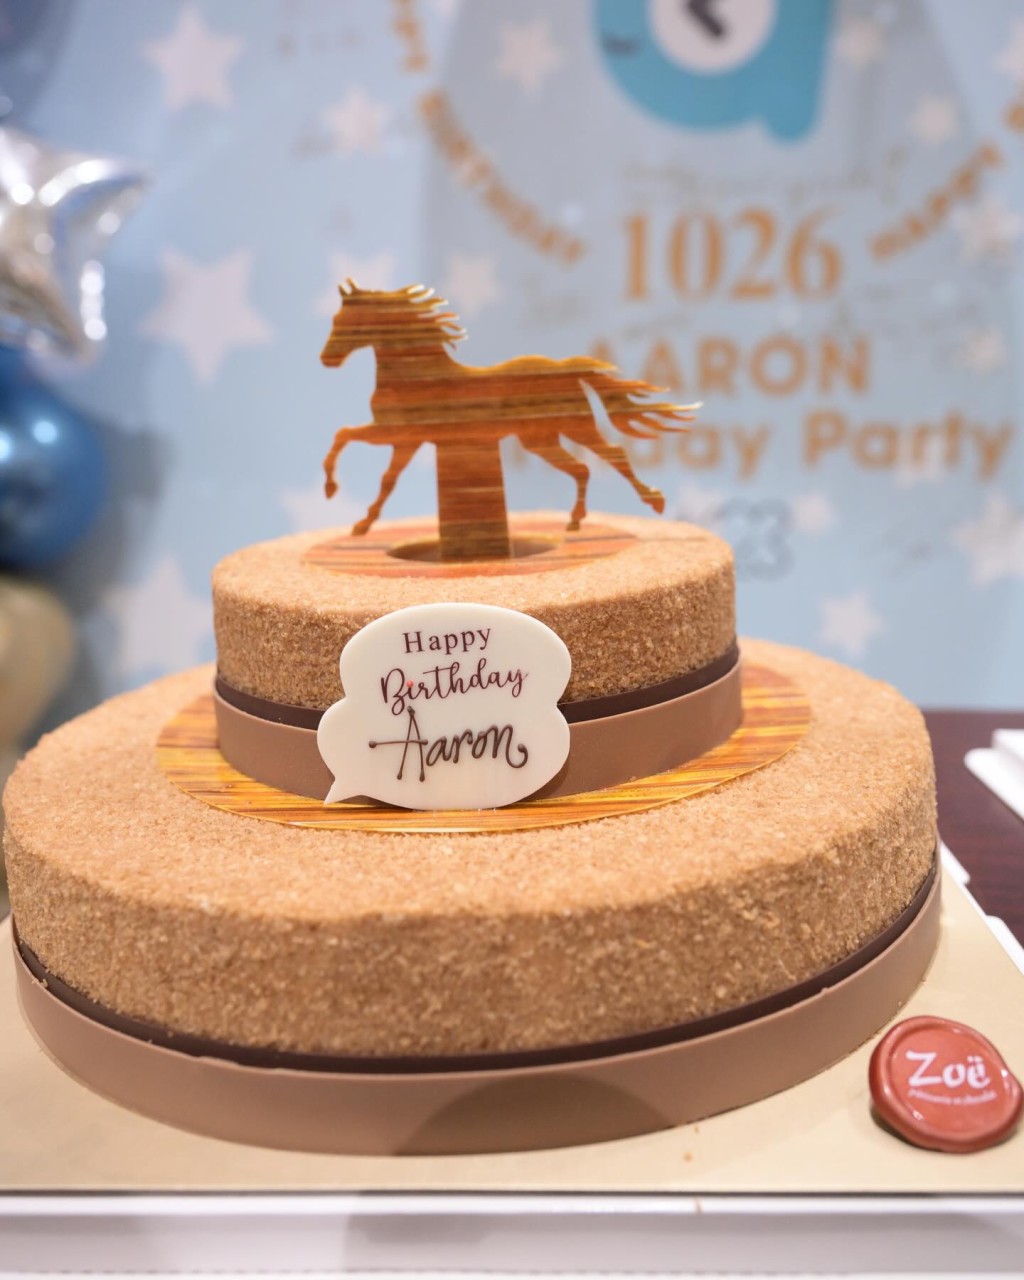 蛋糕以郭富城最爱的马匹为主题。